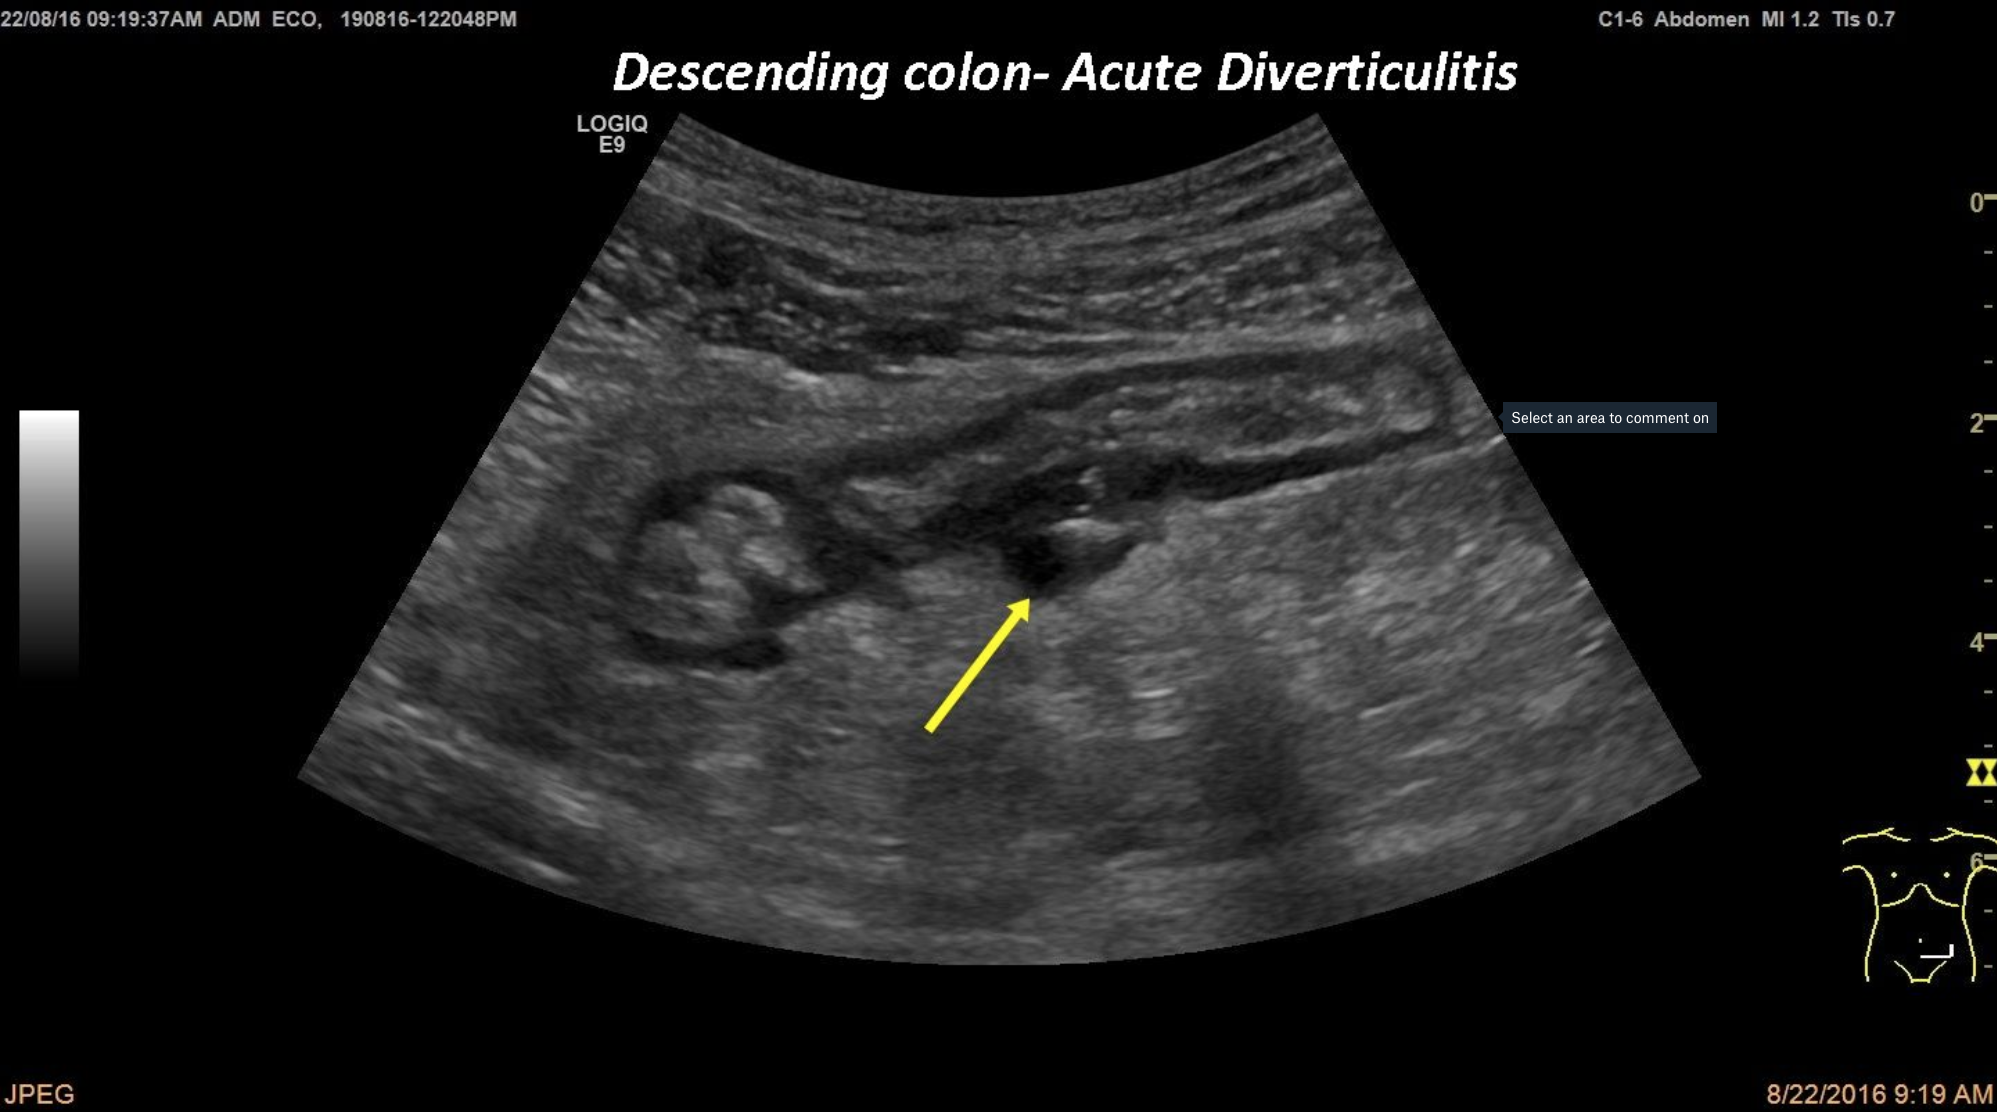 Acute Diverticulitis [1 image]